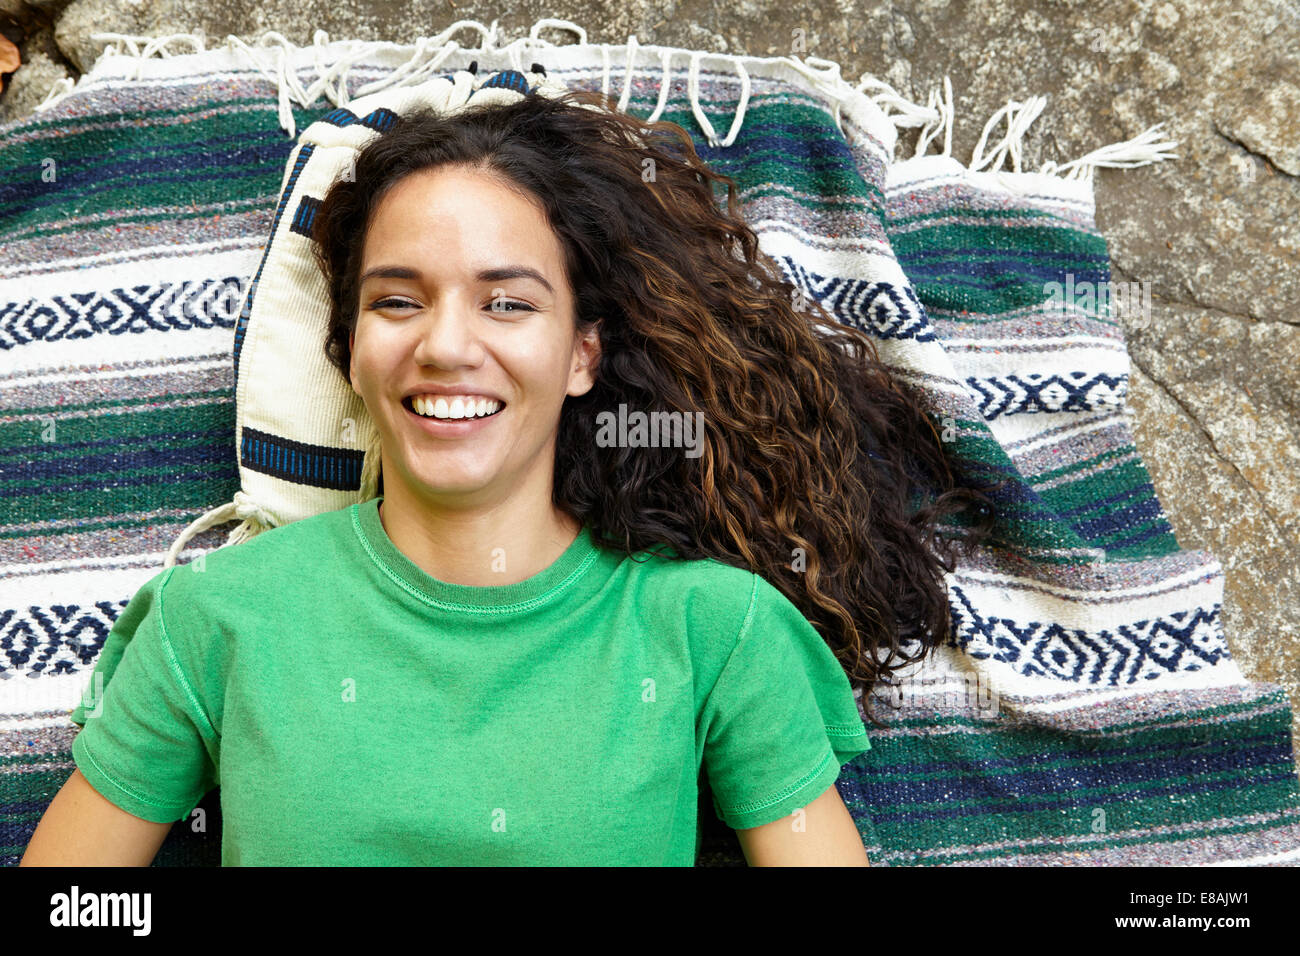 Woman lying on blanket Stock Photo